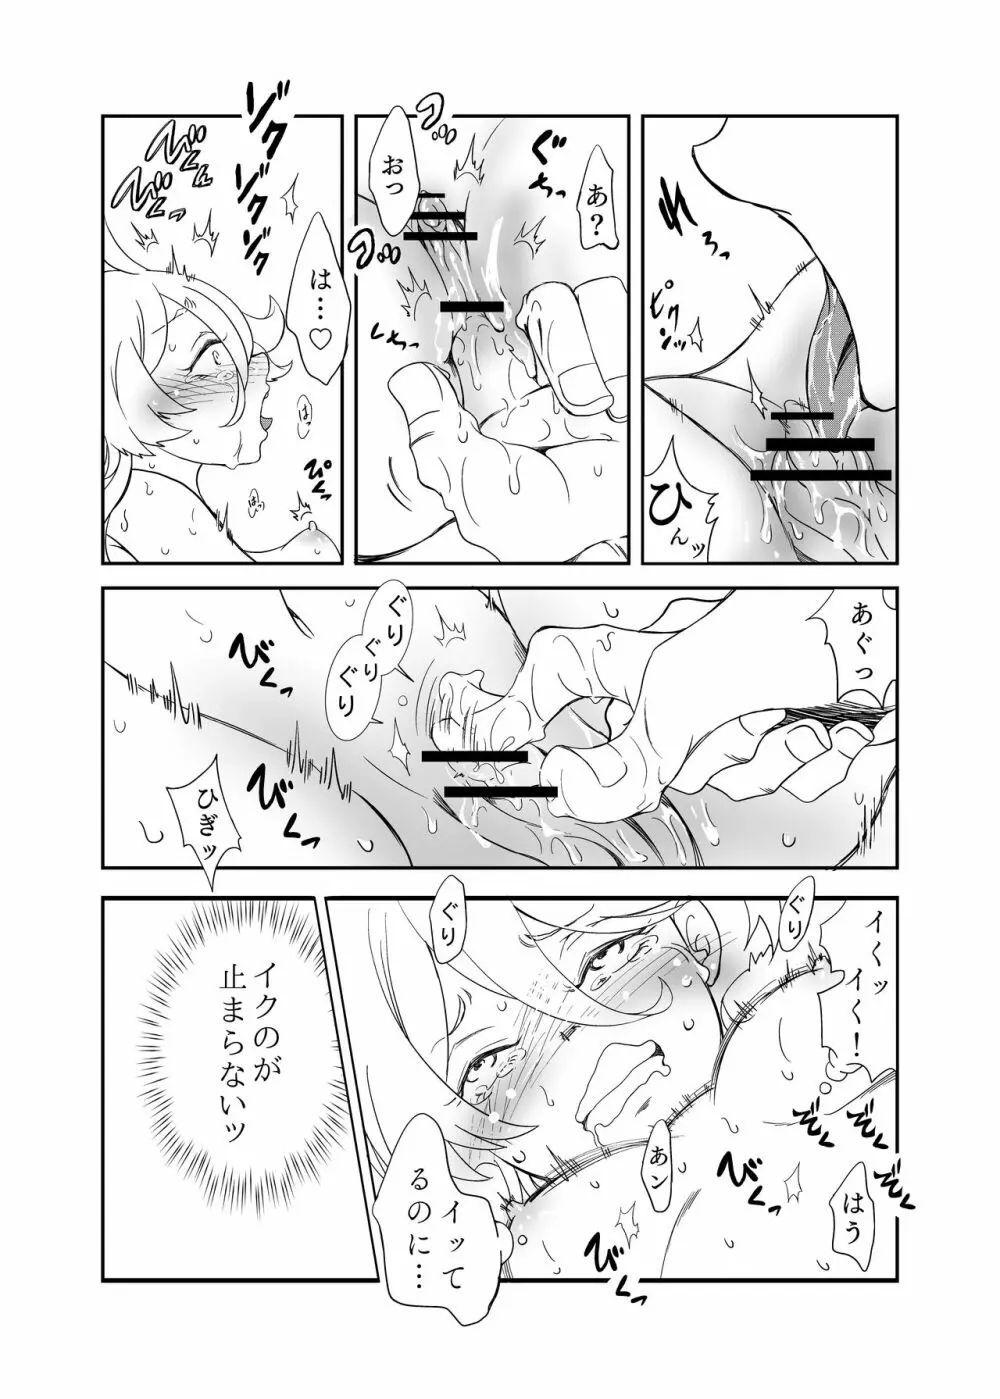 ミオリネ嬢を強制クリイキ連続絶頂で屈服させる話 - page10